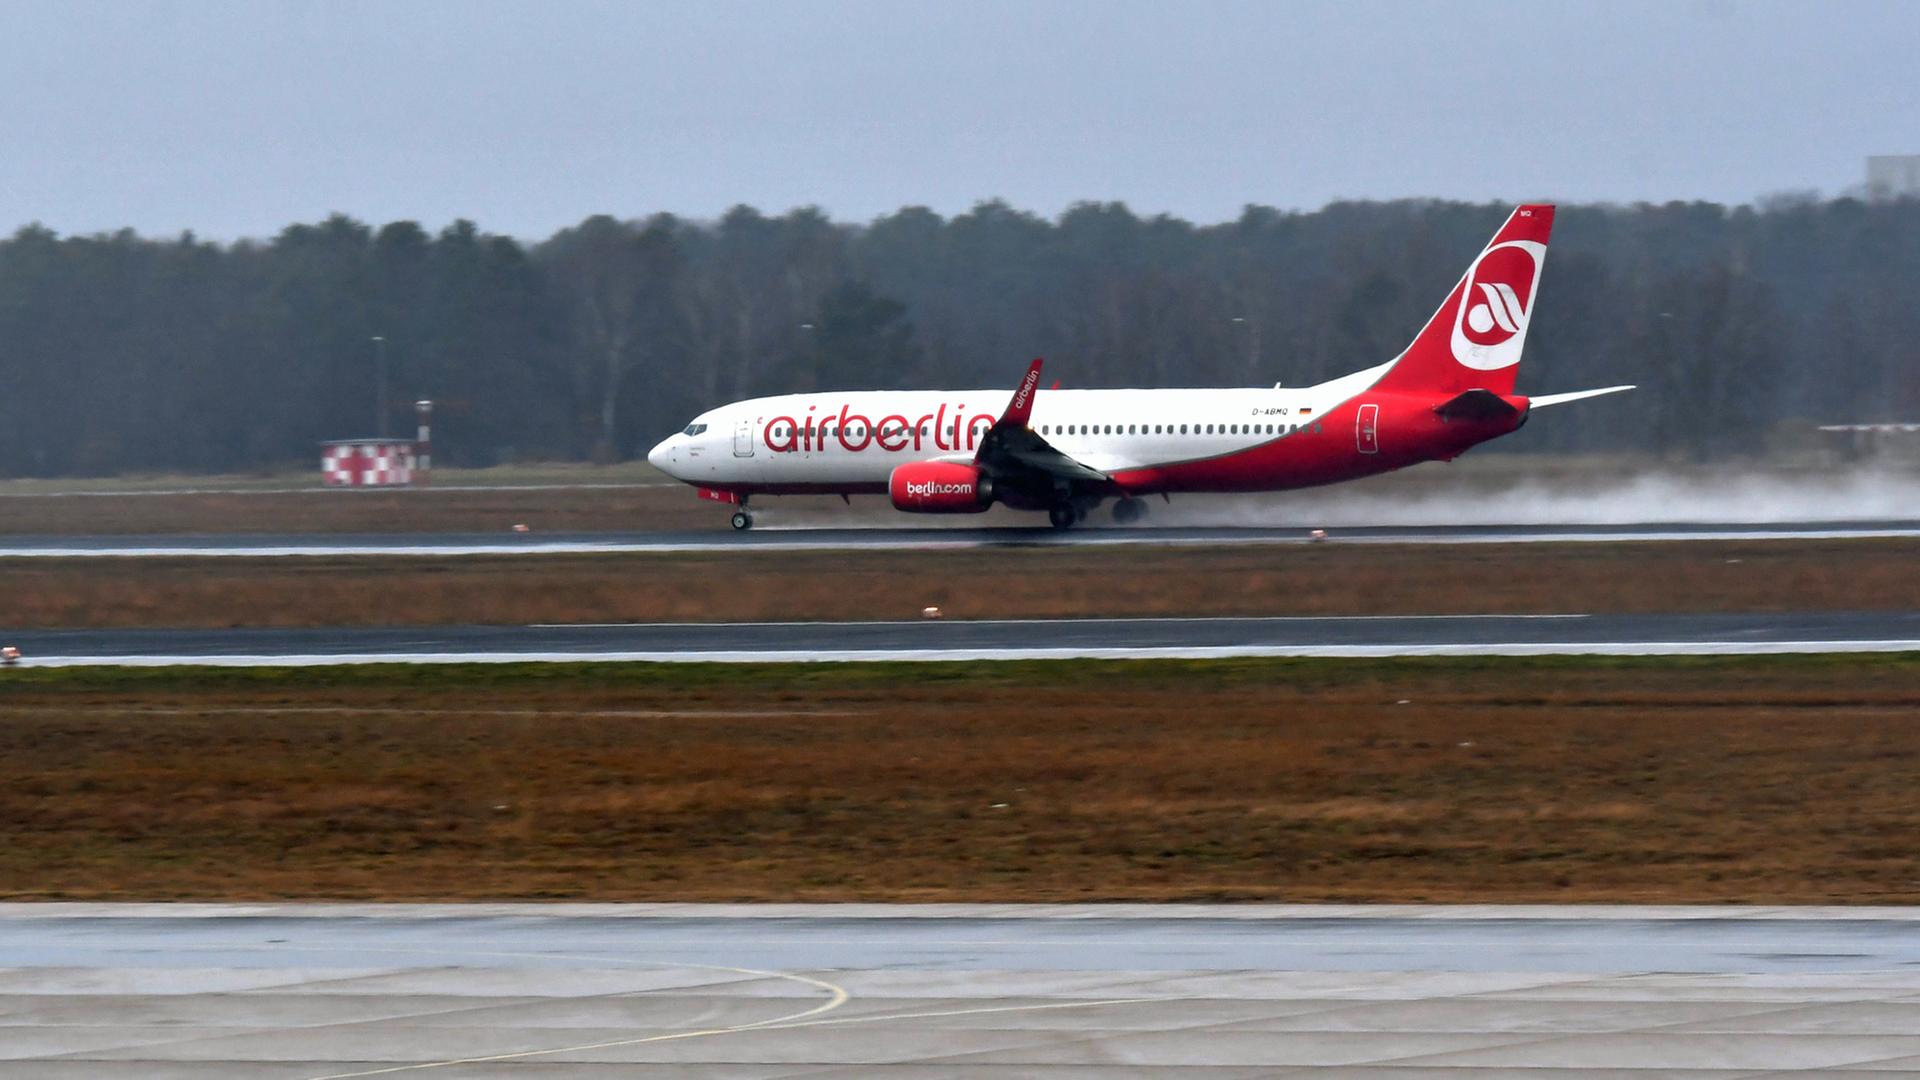 Eine Maschine der ehemaligen Fluglinie "Air Berlin" startet am 2. Januar 2018 in Berlin am Flughafen Tegel. Das Flugzeug hat nach der Insolvenz der Fluggesellsachaft den Besitzer gewechselt, wurde aber bisher nicht umlackiert.